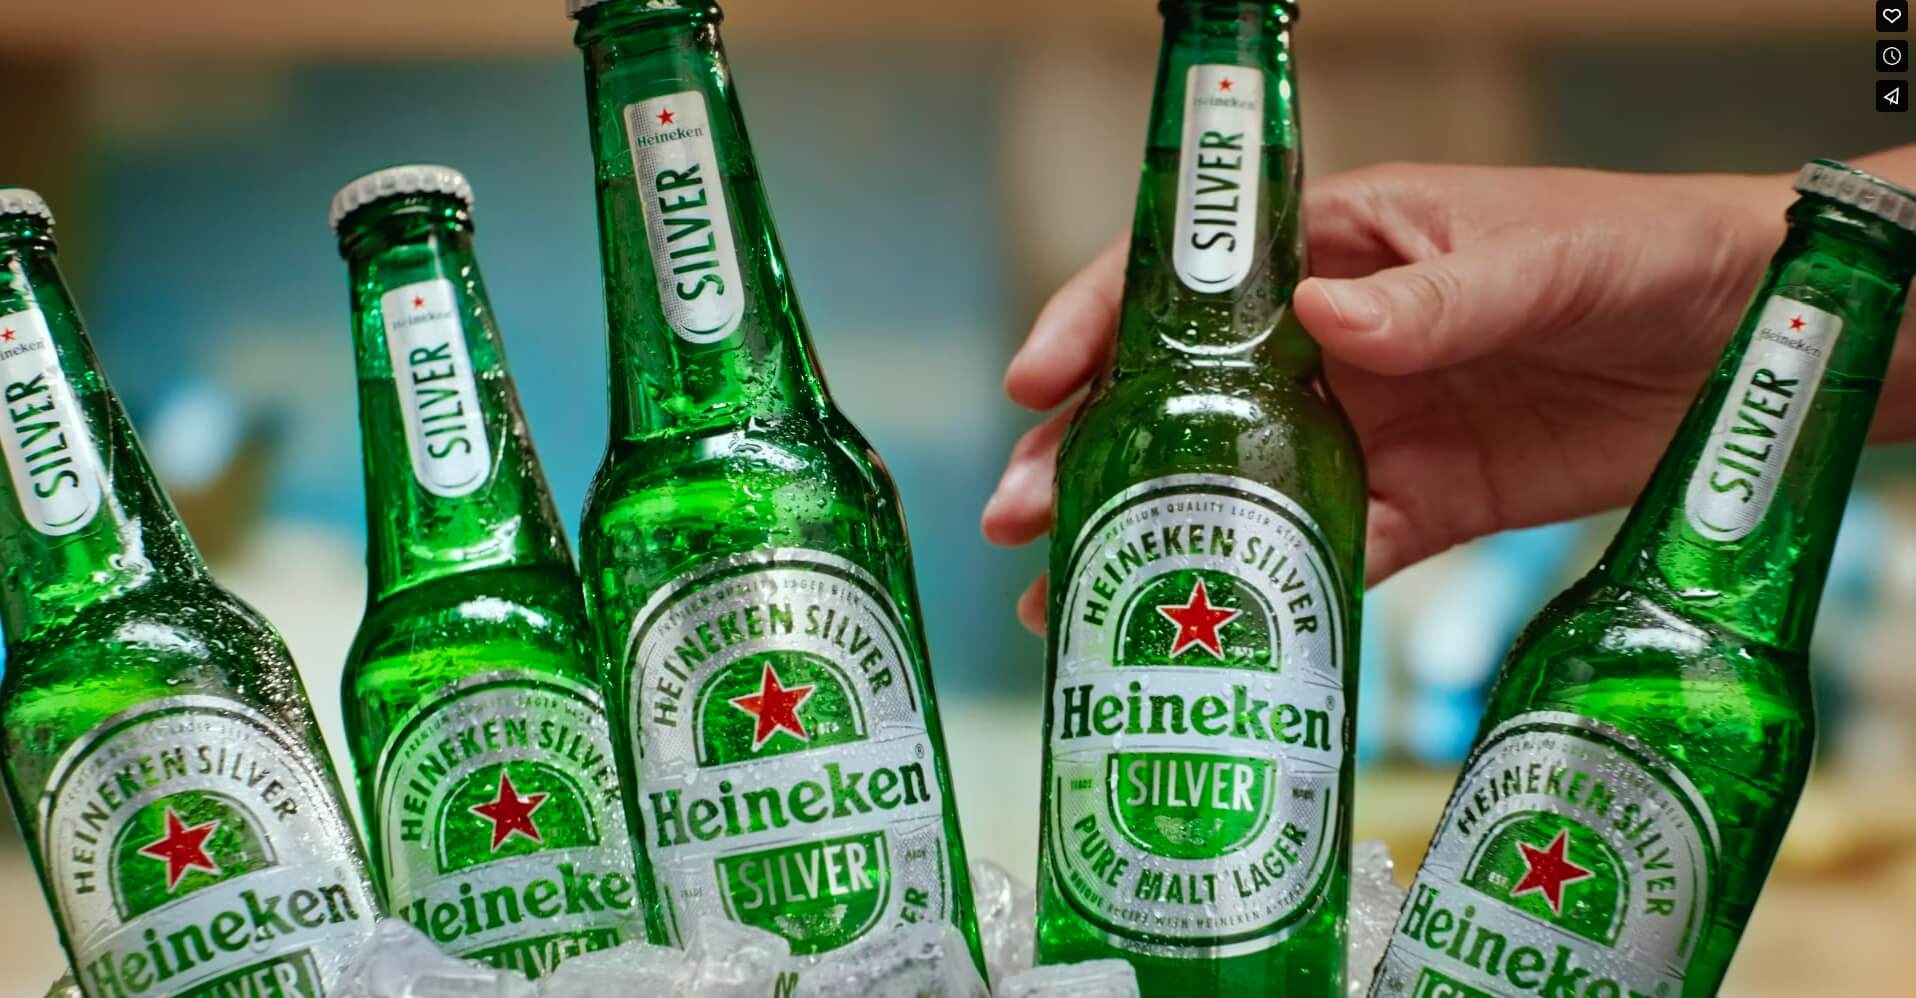 Heineken Silver 318% sales increase thanks to brand activation